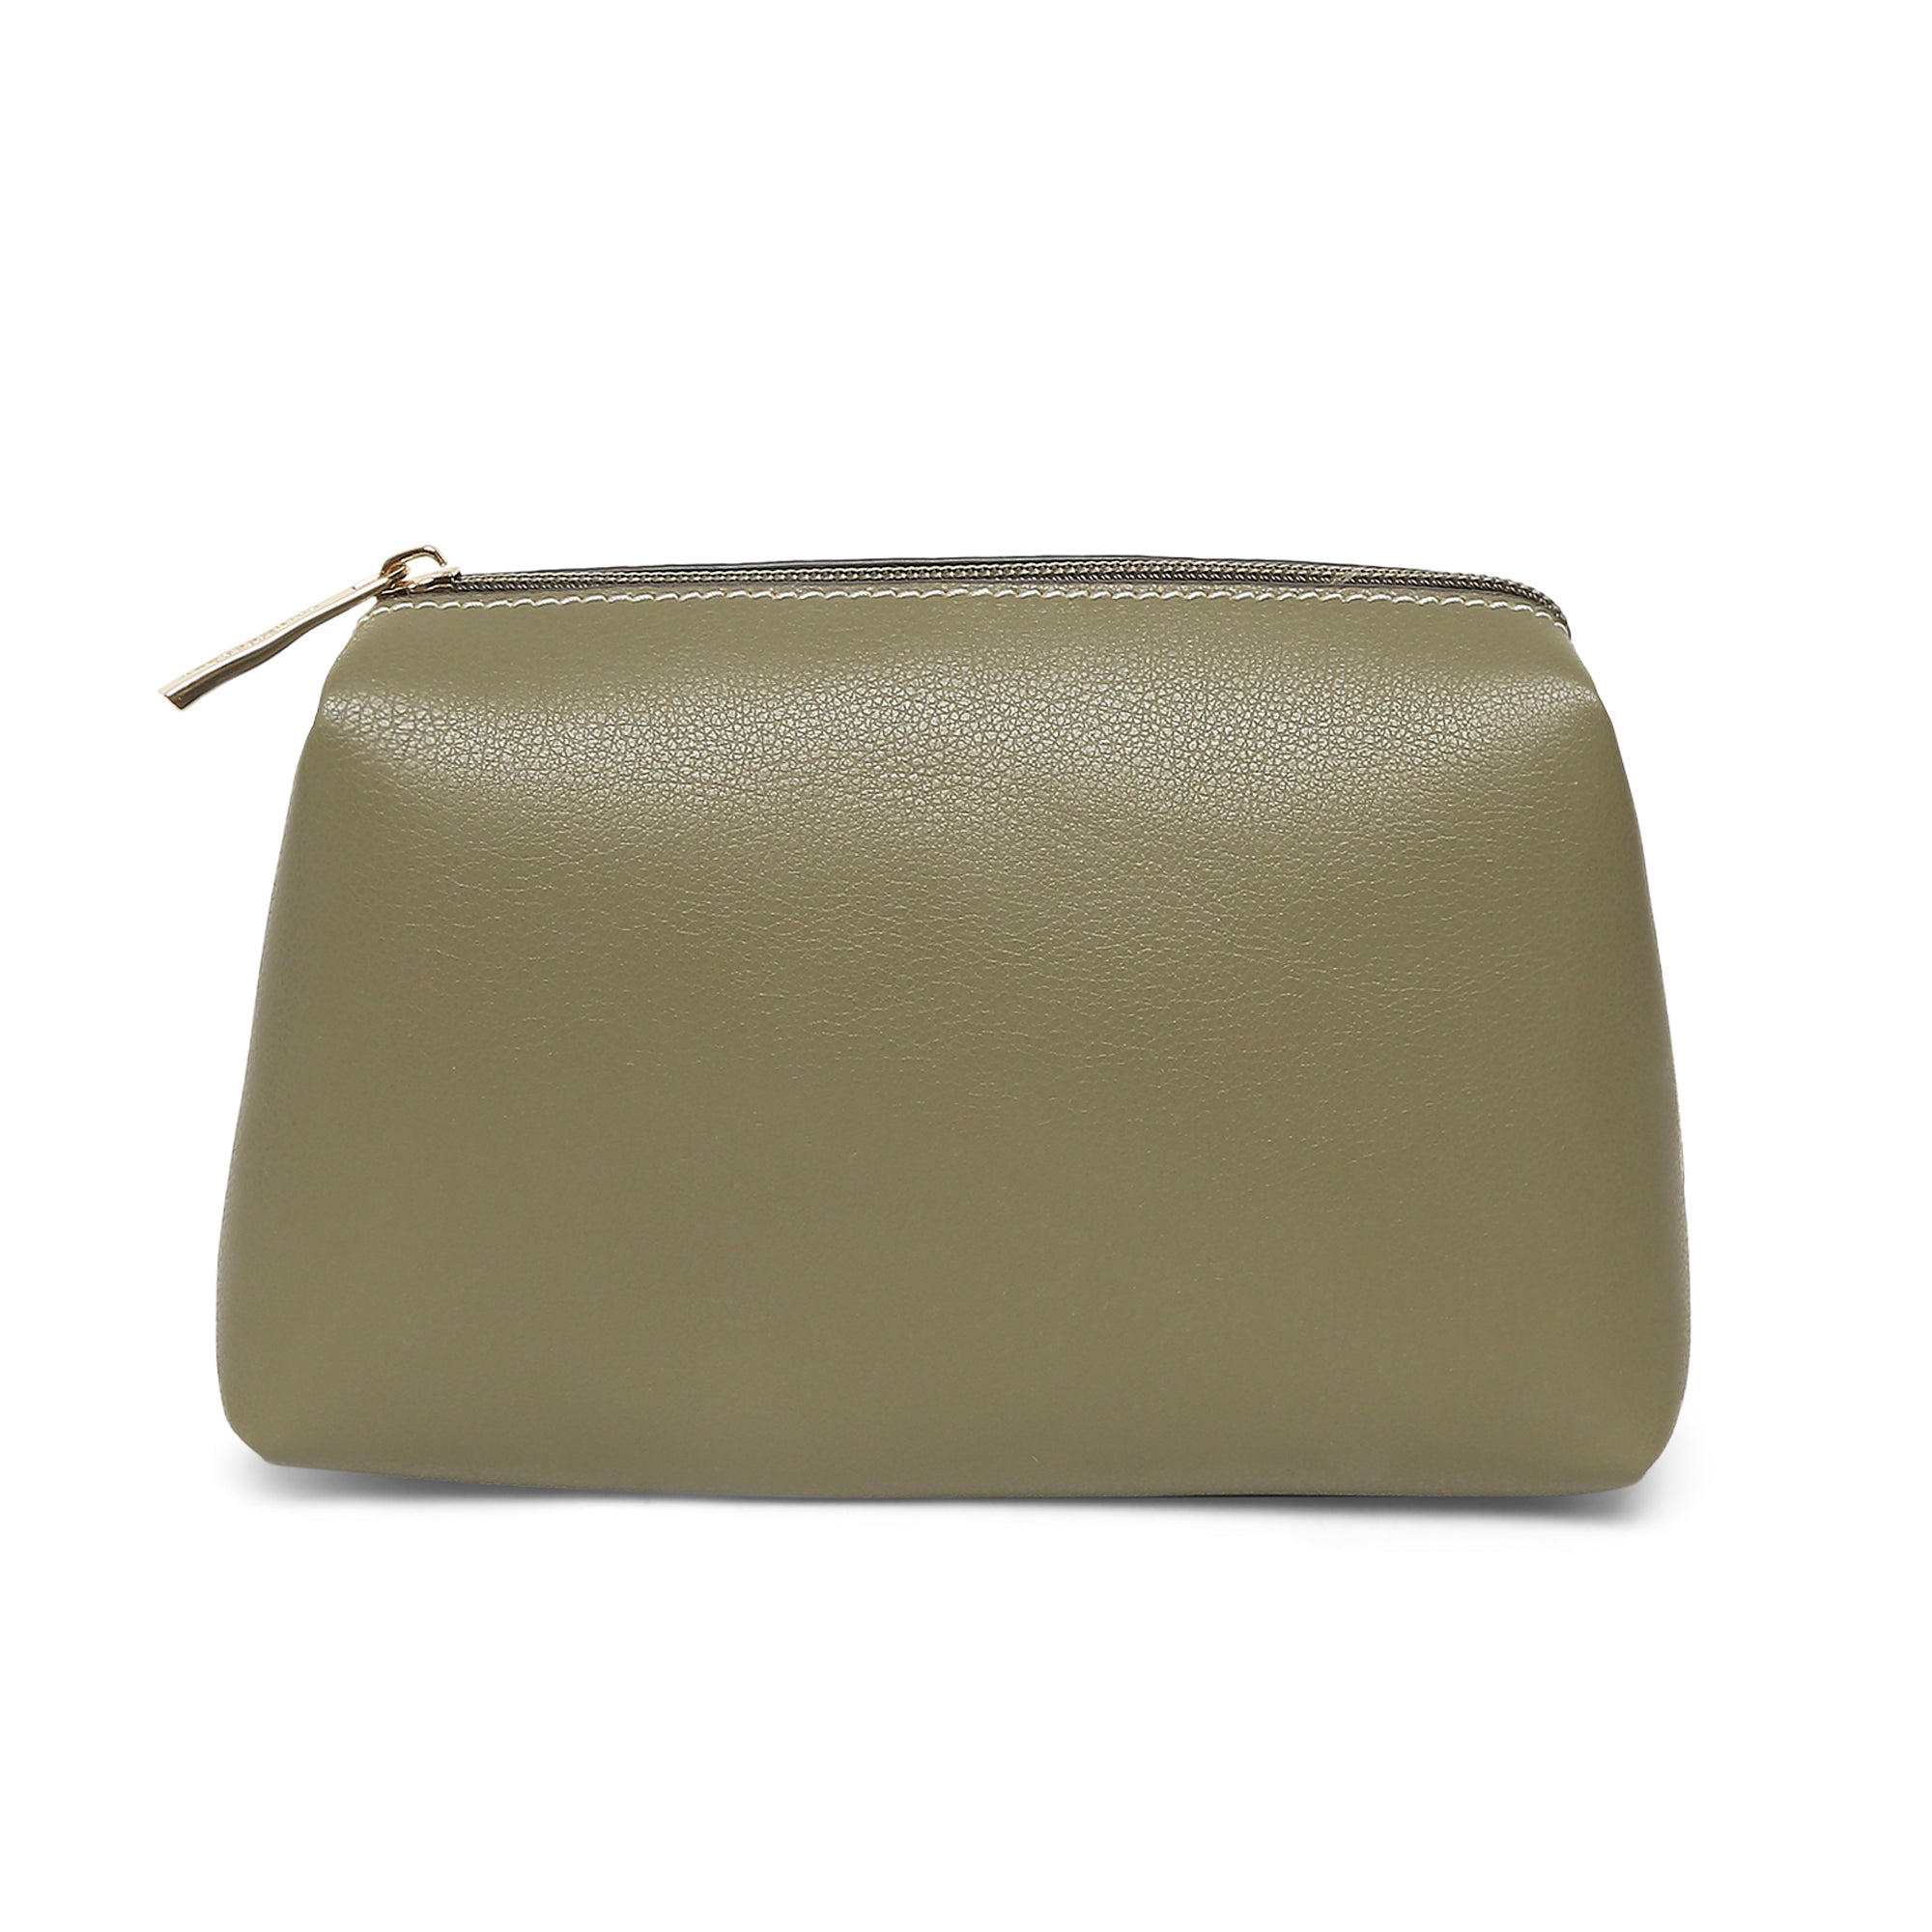 Rocawear Olive Green Clutch Purse/Handbag | eBay